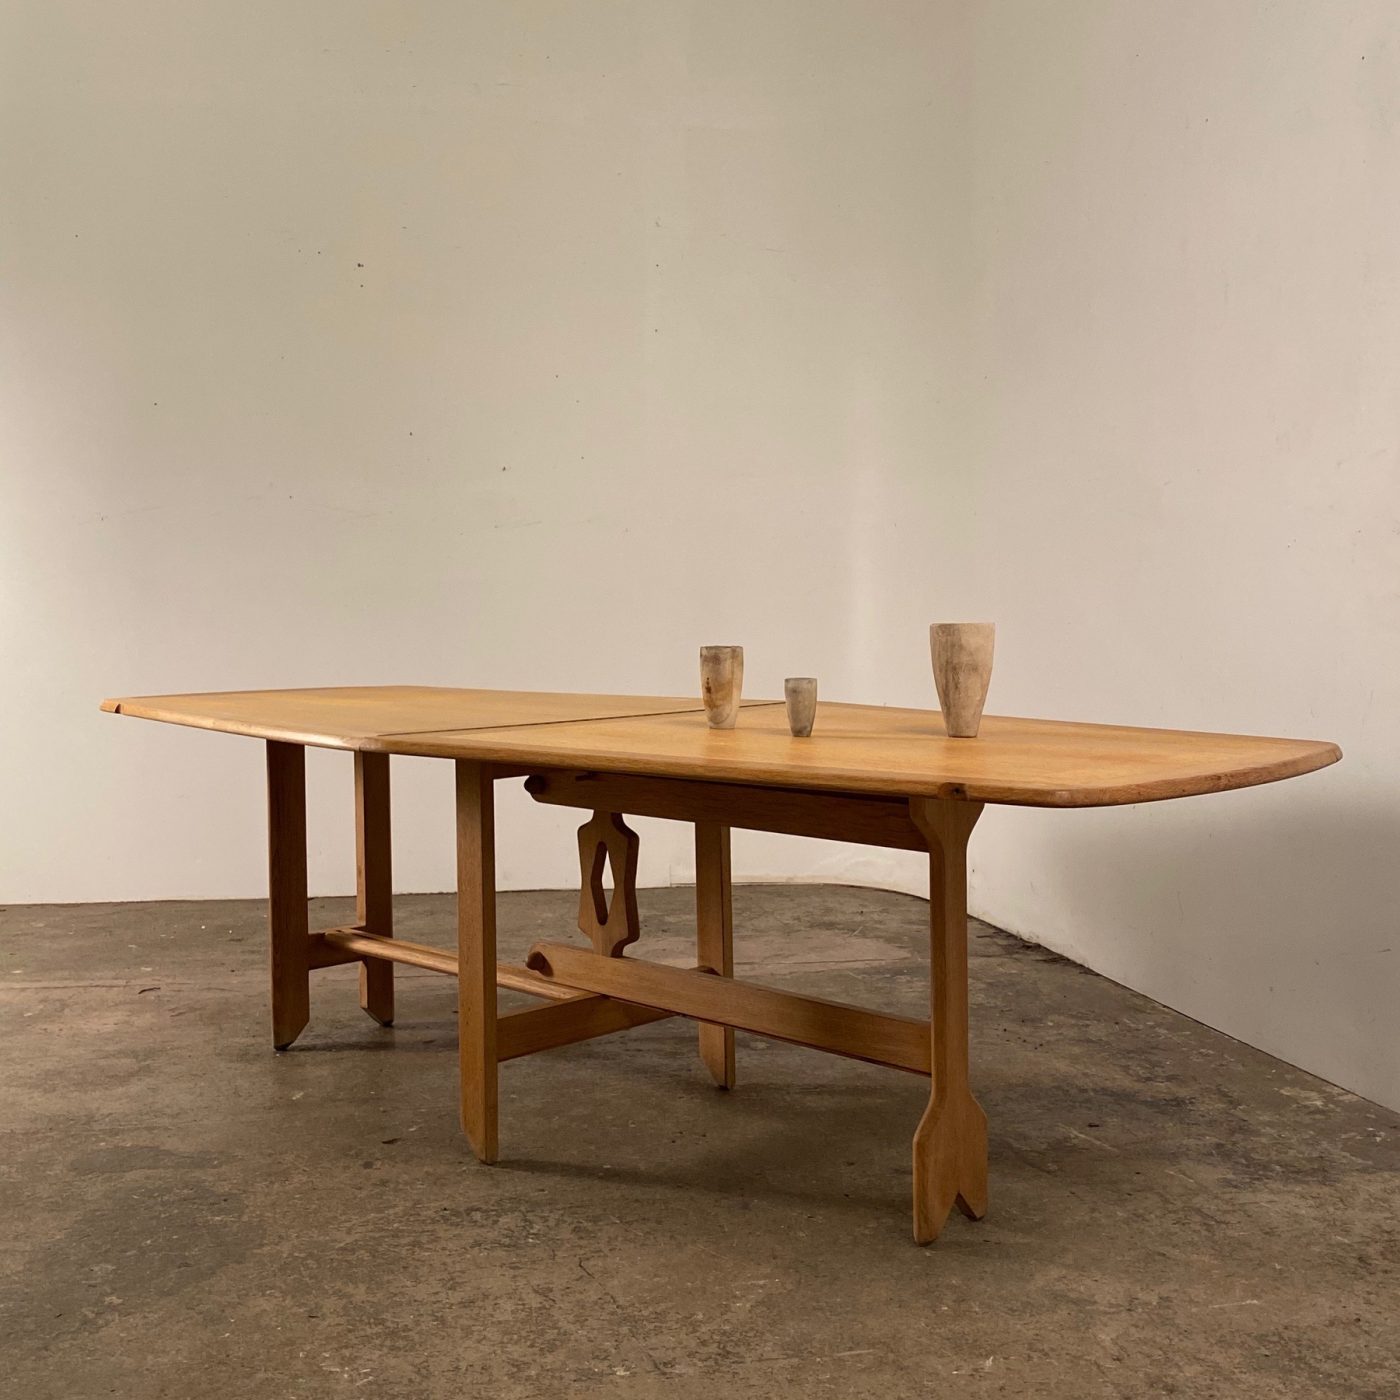 objet-vagabond-midcentury-table0001